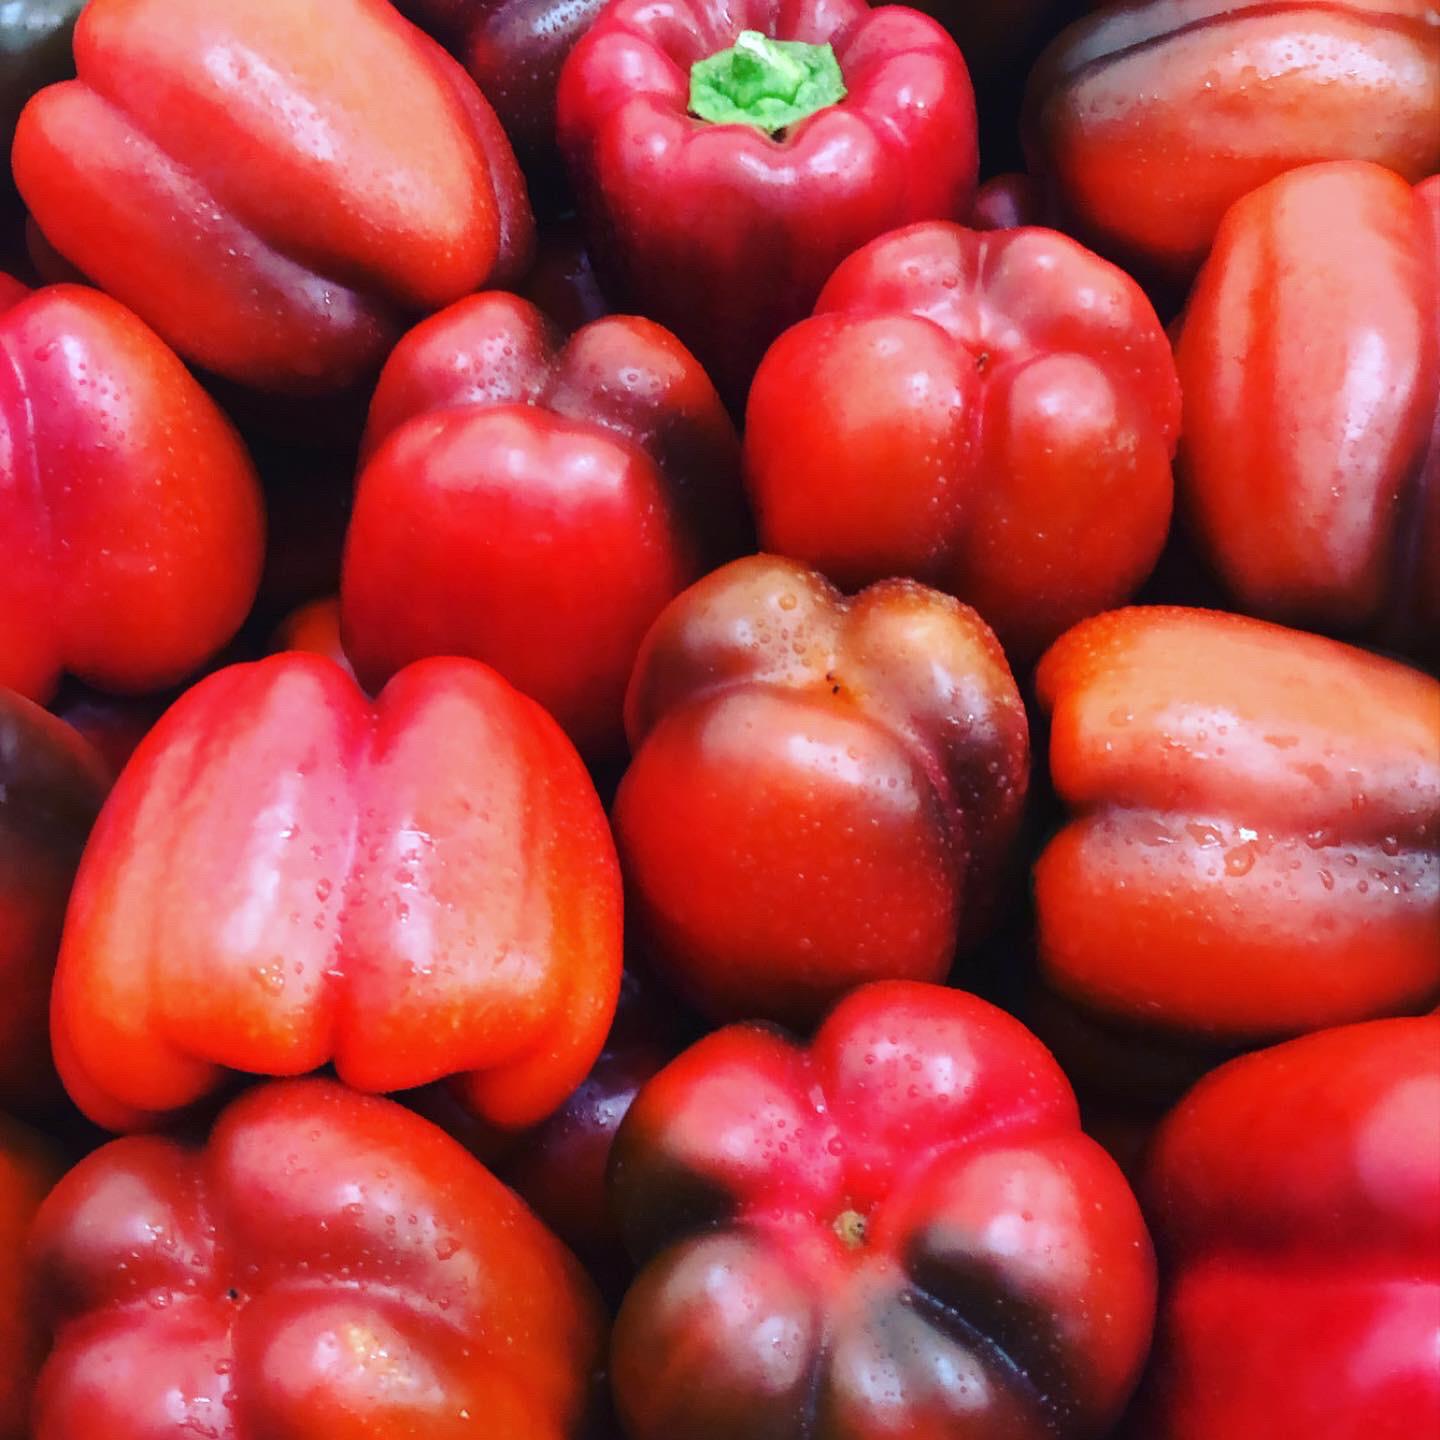 يافا: أسعار منافسة في سوق هيميت للخضار والفواكه الطازجة 